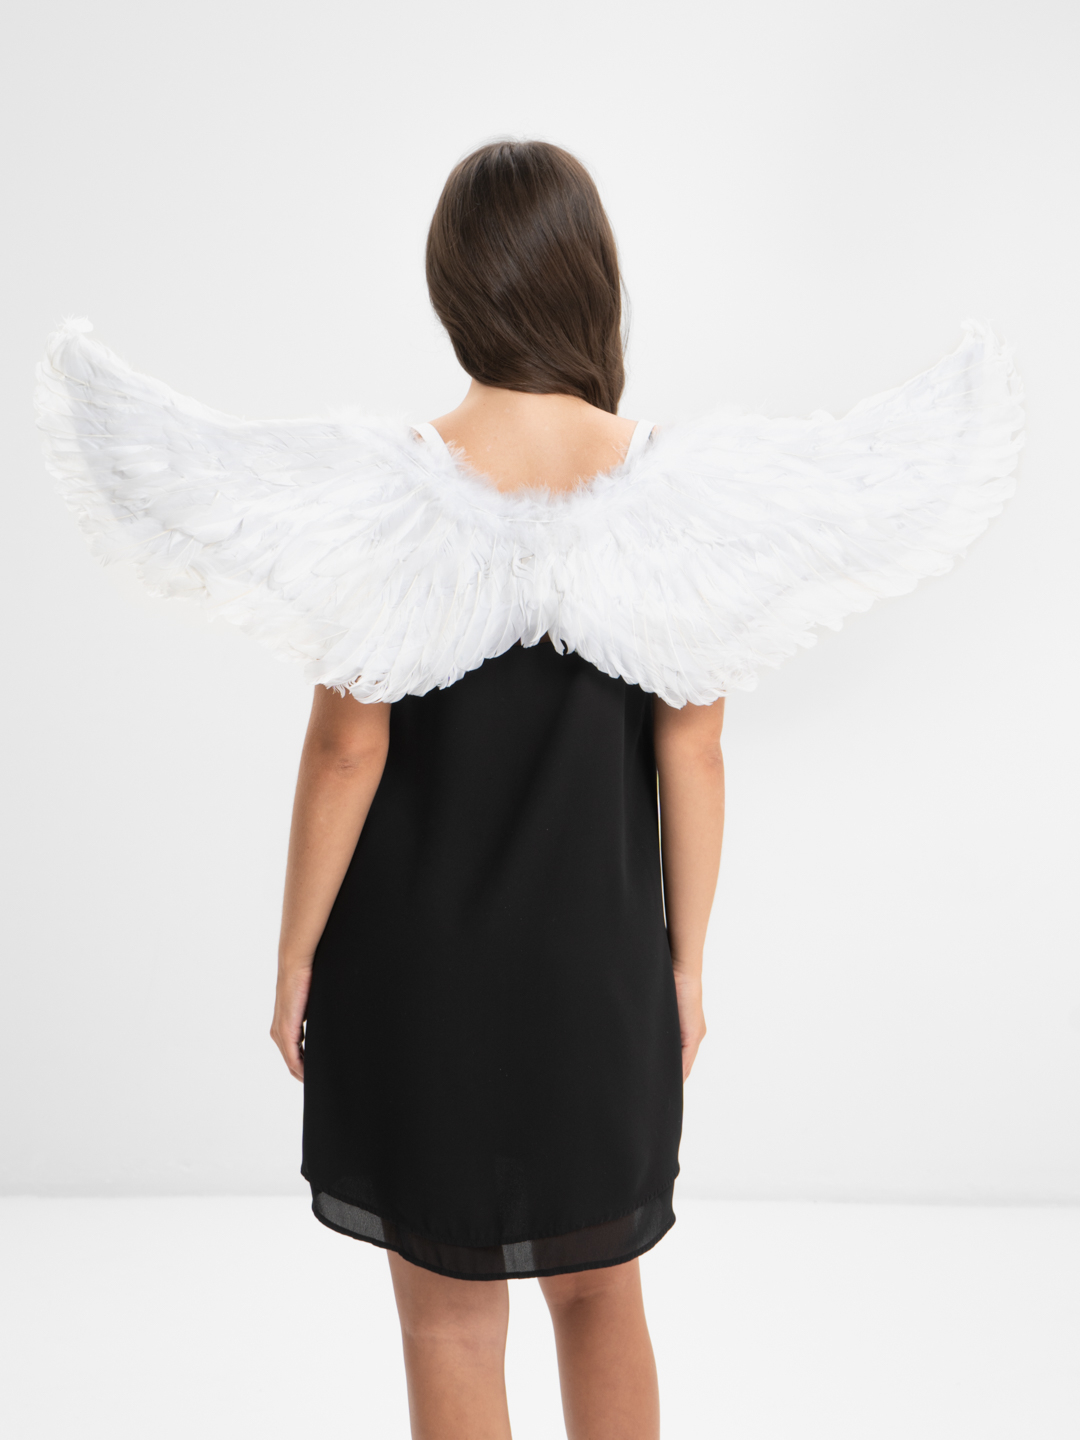 63824002 Крылья ангела из перьев, 13*11 см, Glorex